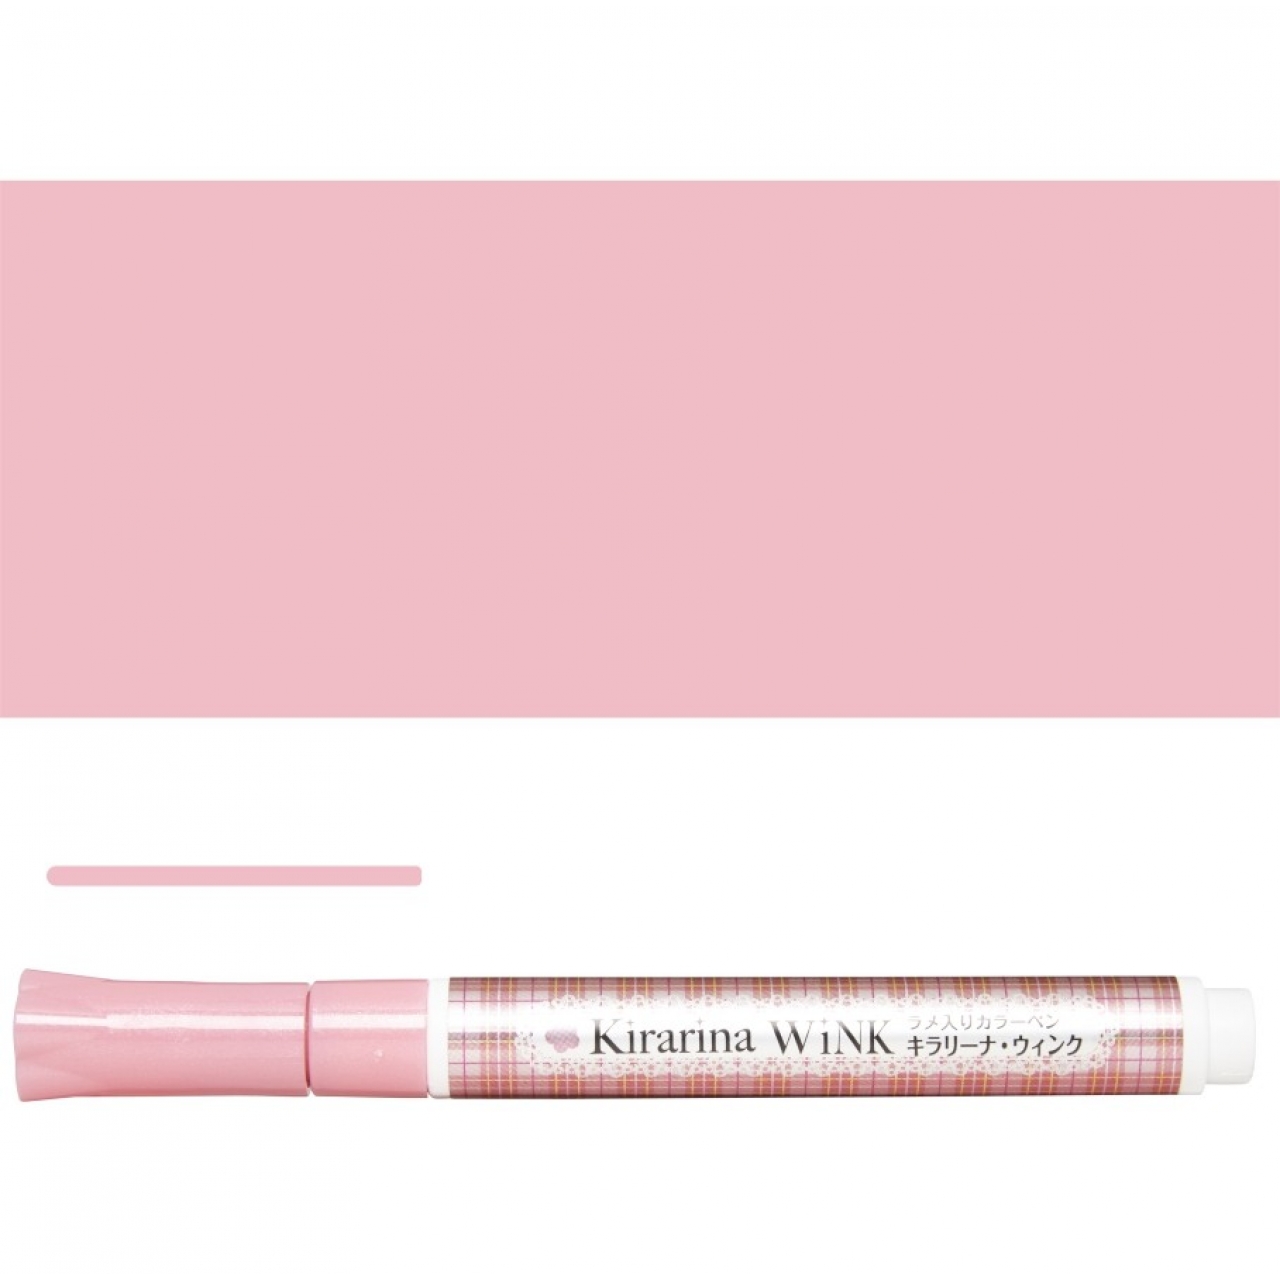 Kirarina WINK - Baby Pink